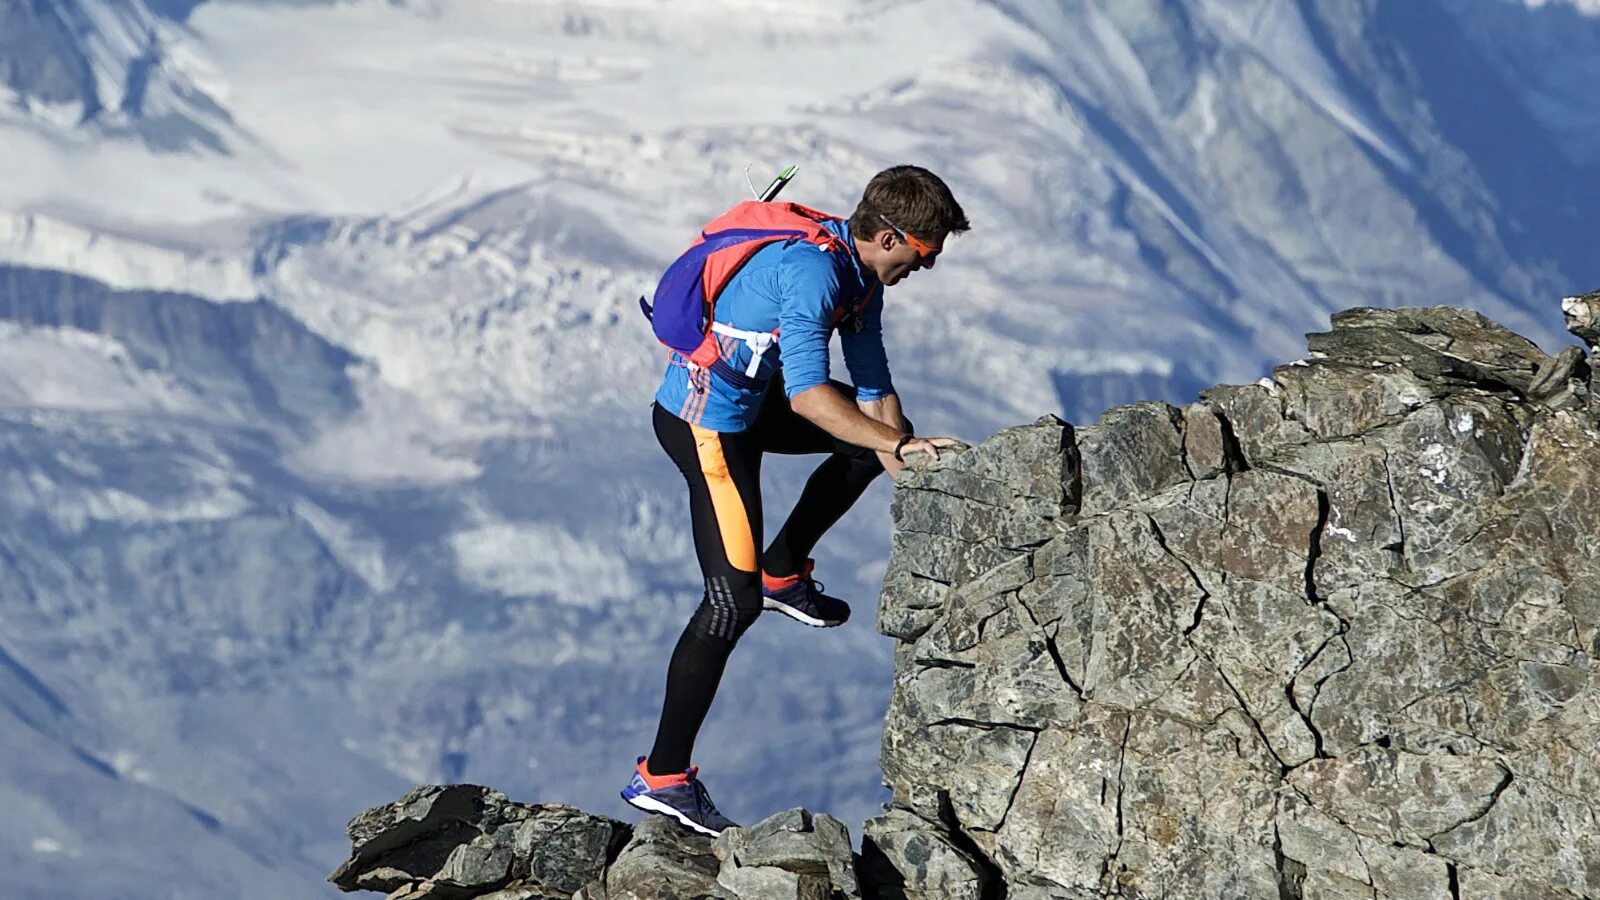 Тони Курц альпинист. Подъем в гору. Человек взбирается на гору. Восхождение на гору.